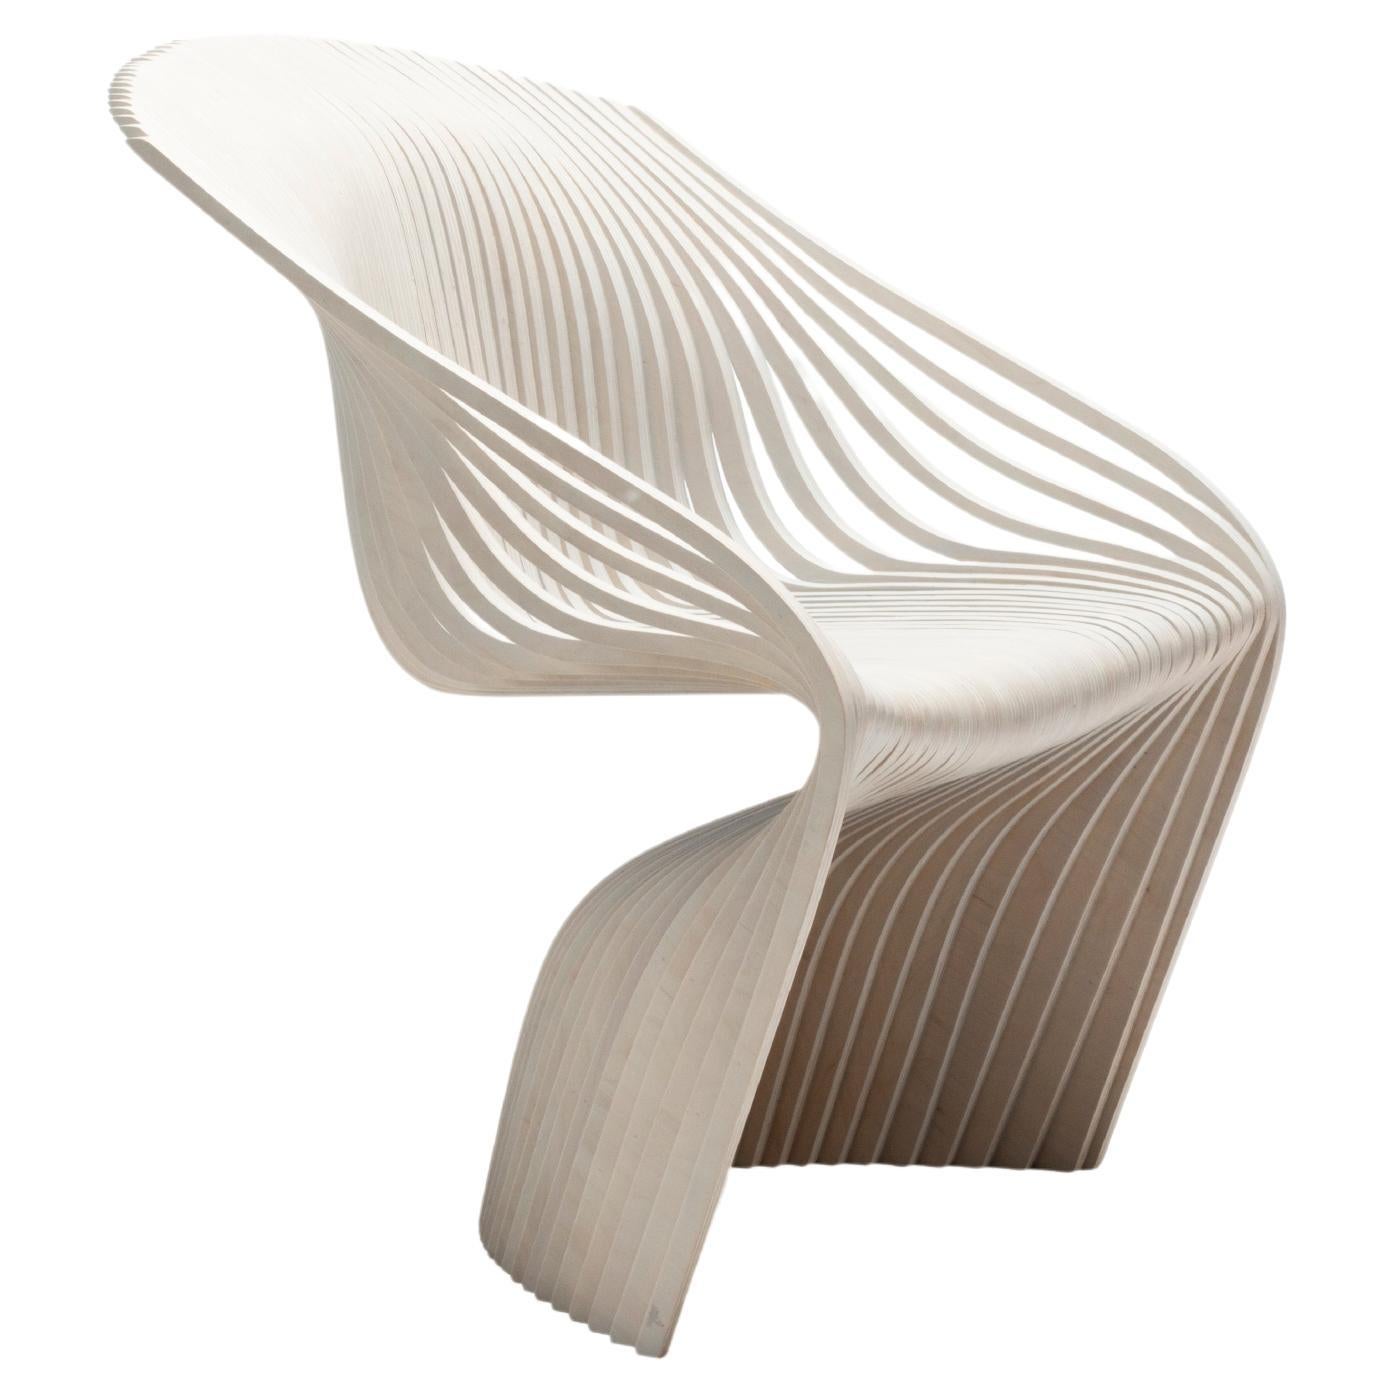 Aida Chair von Piegatto, ein skulpturaler Contemporary Stuhl 